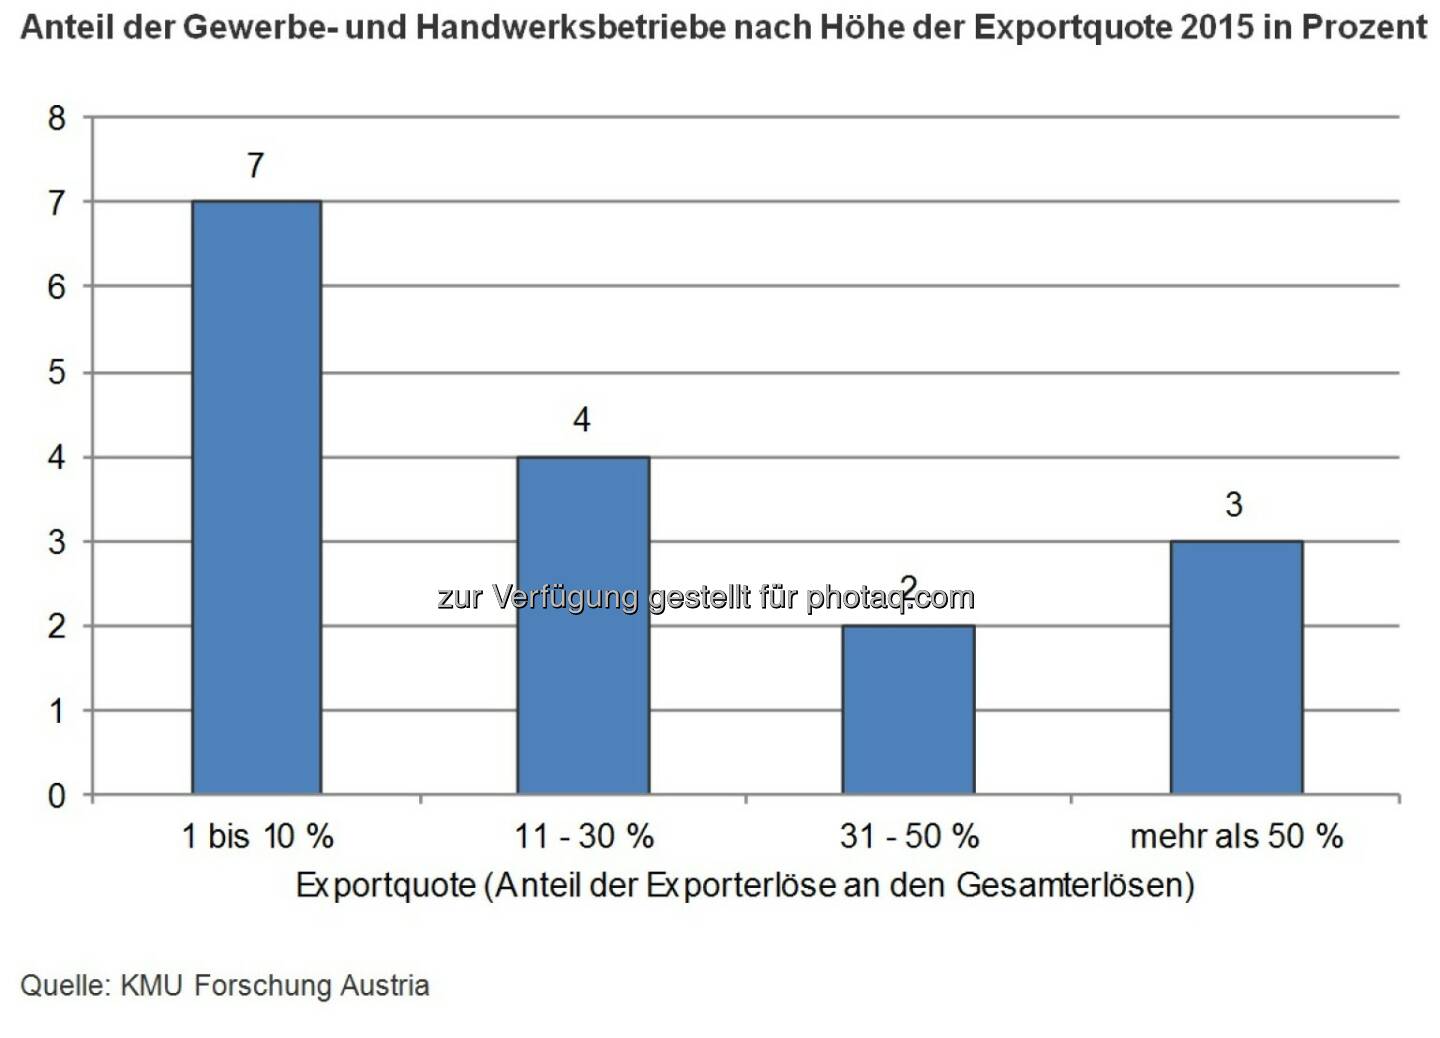 Grafik Anteil der Gewerbe- und Handwerksbetriebe nach Höhe der Exportquote 2015 in Prozent : 6,5 Milliarden Exportumsatz im Gewerbe : Fotocredit: KMU Forschung Austria